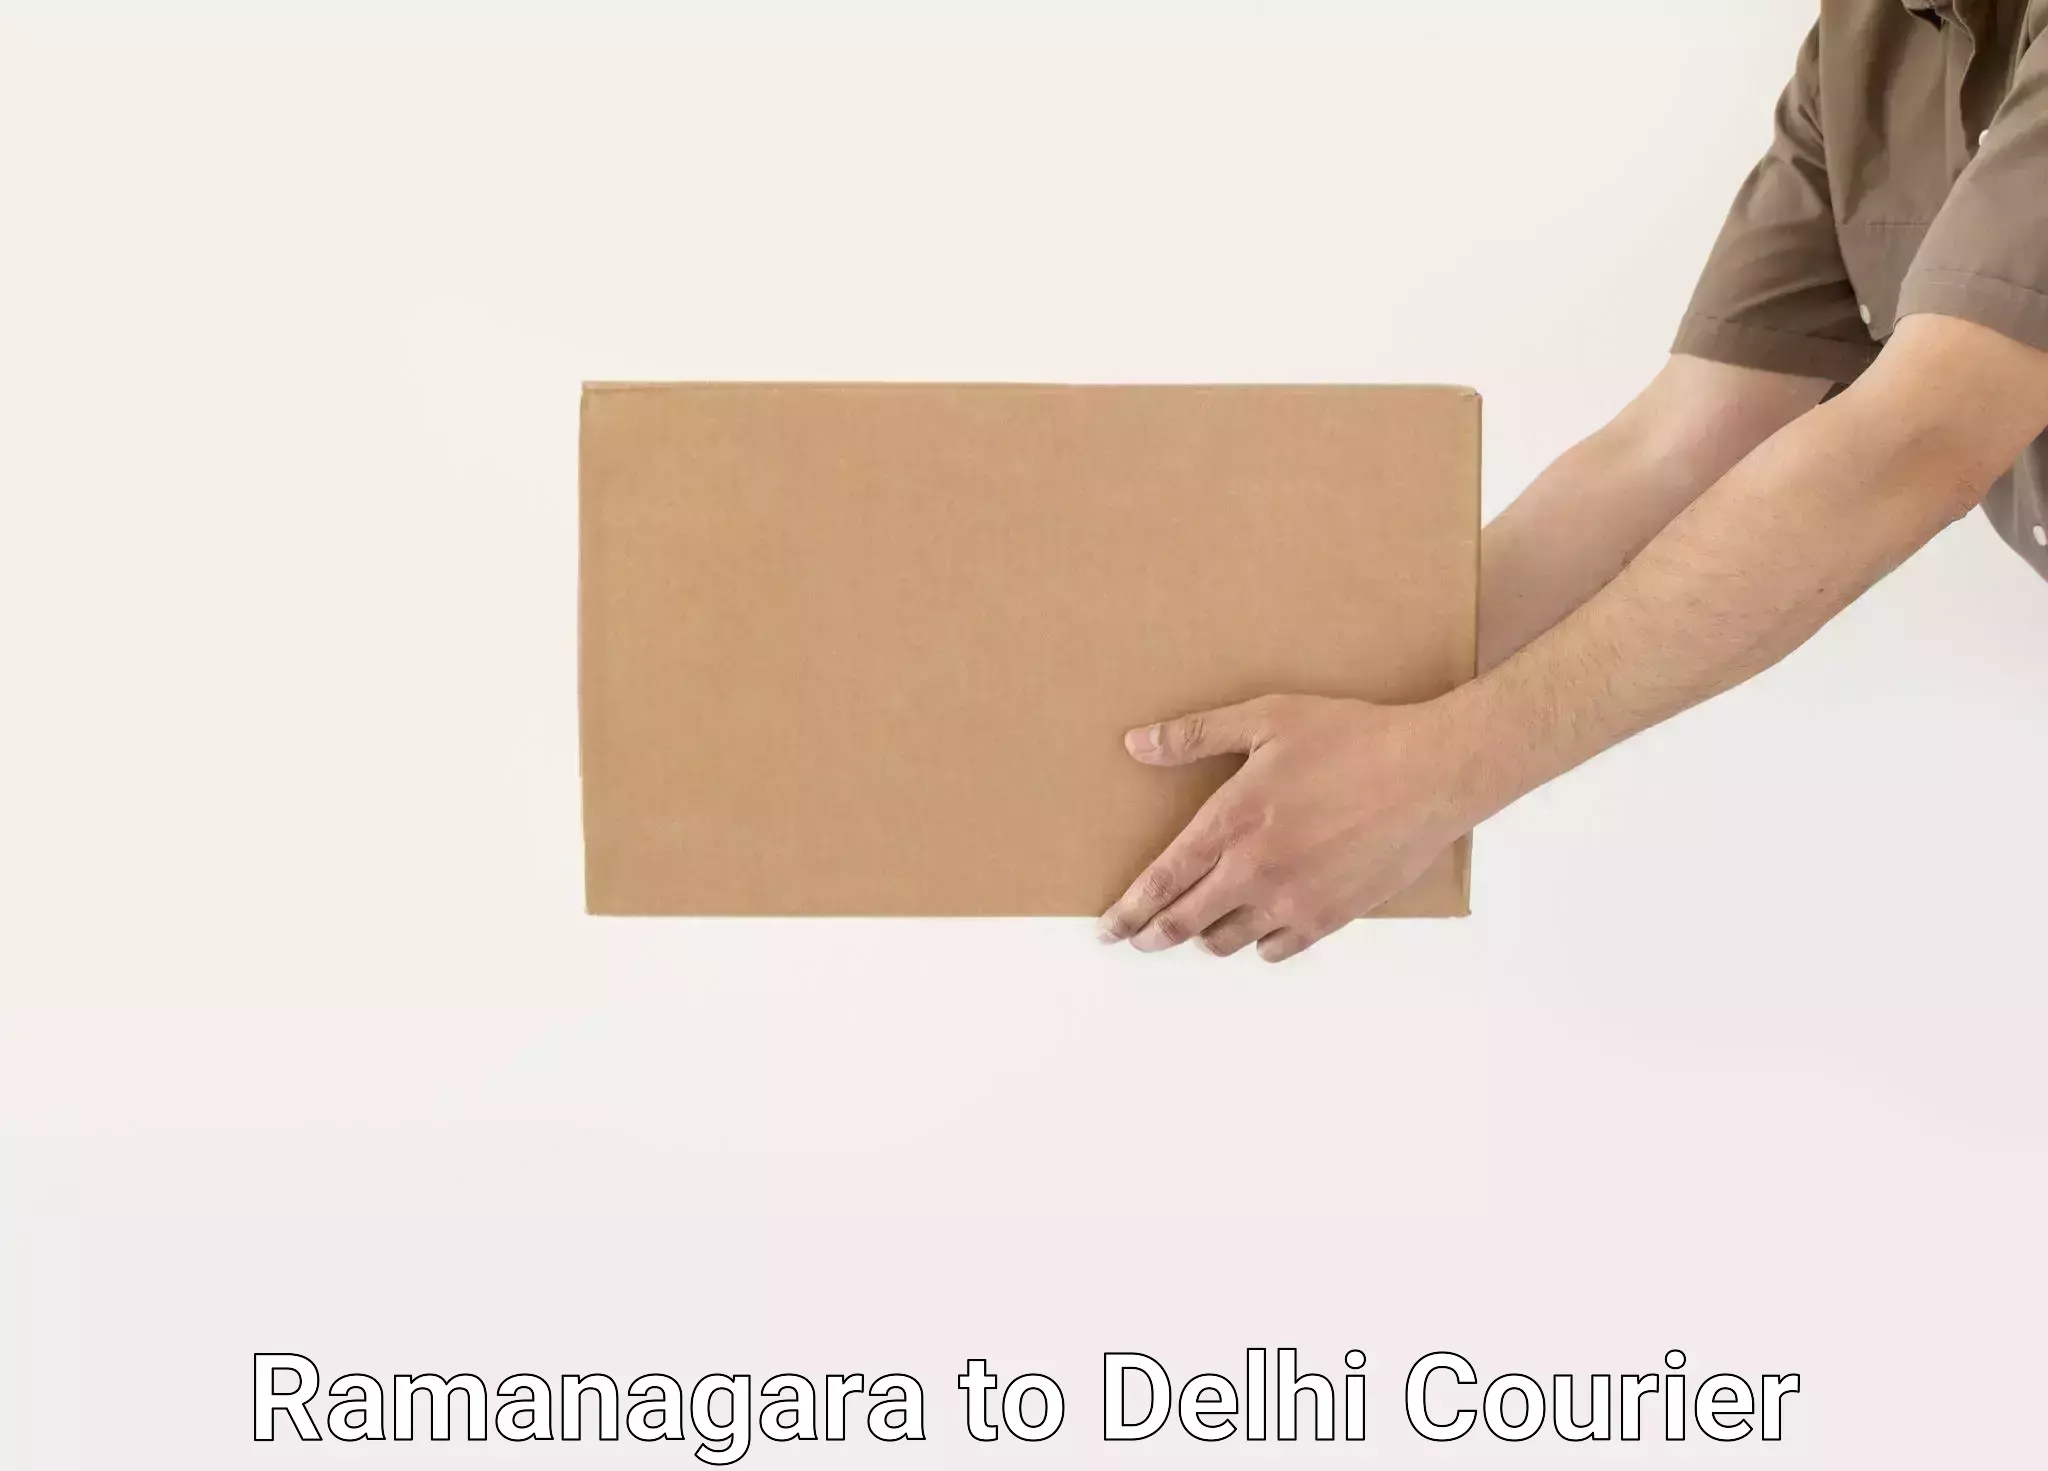 Residential moving experts Ramanagara to Jamia Millia Islamia New Delhi